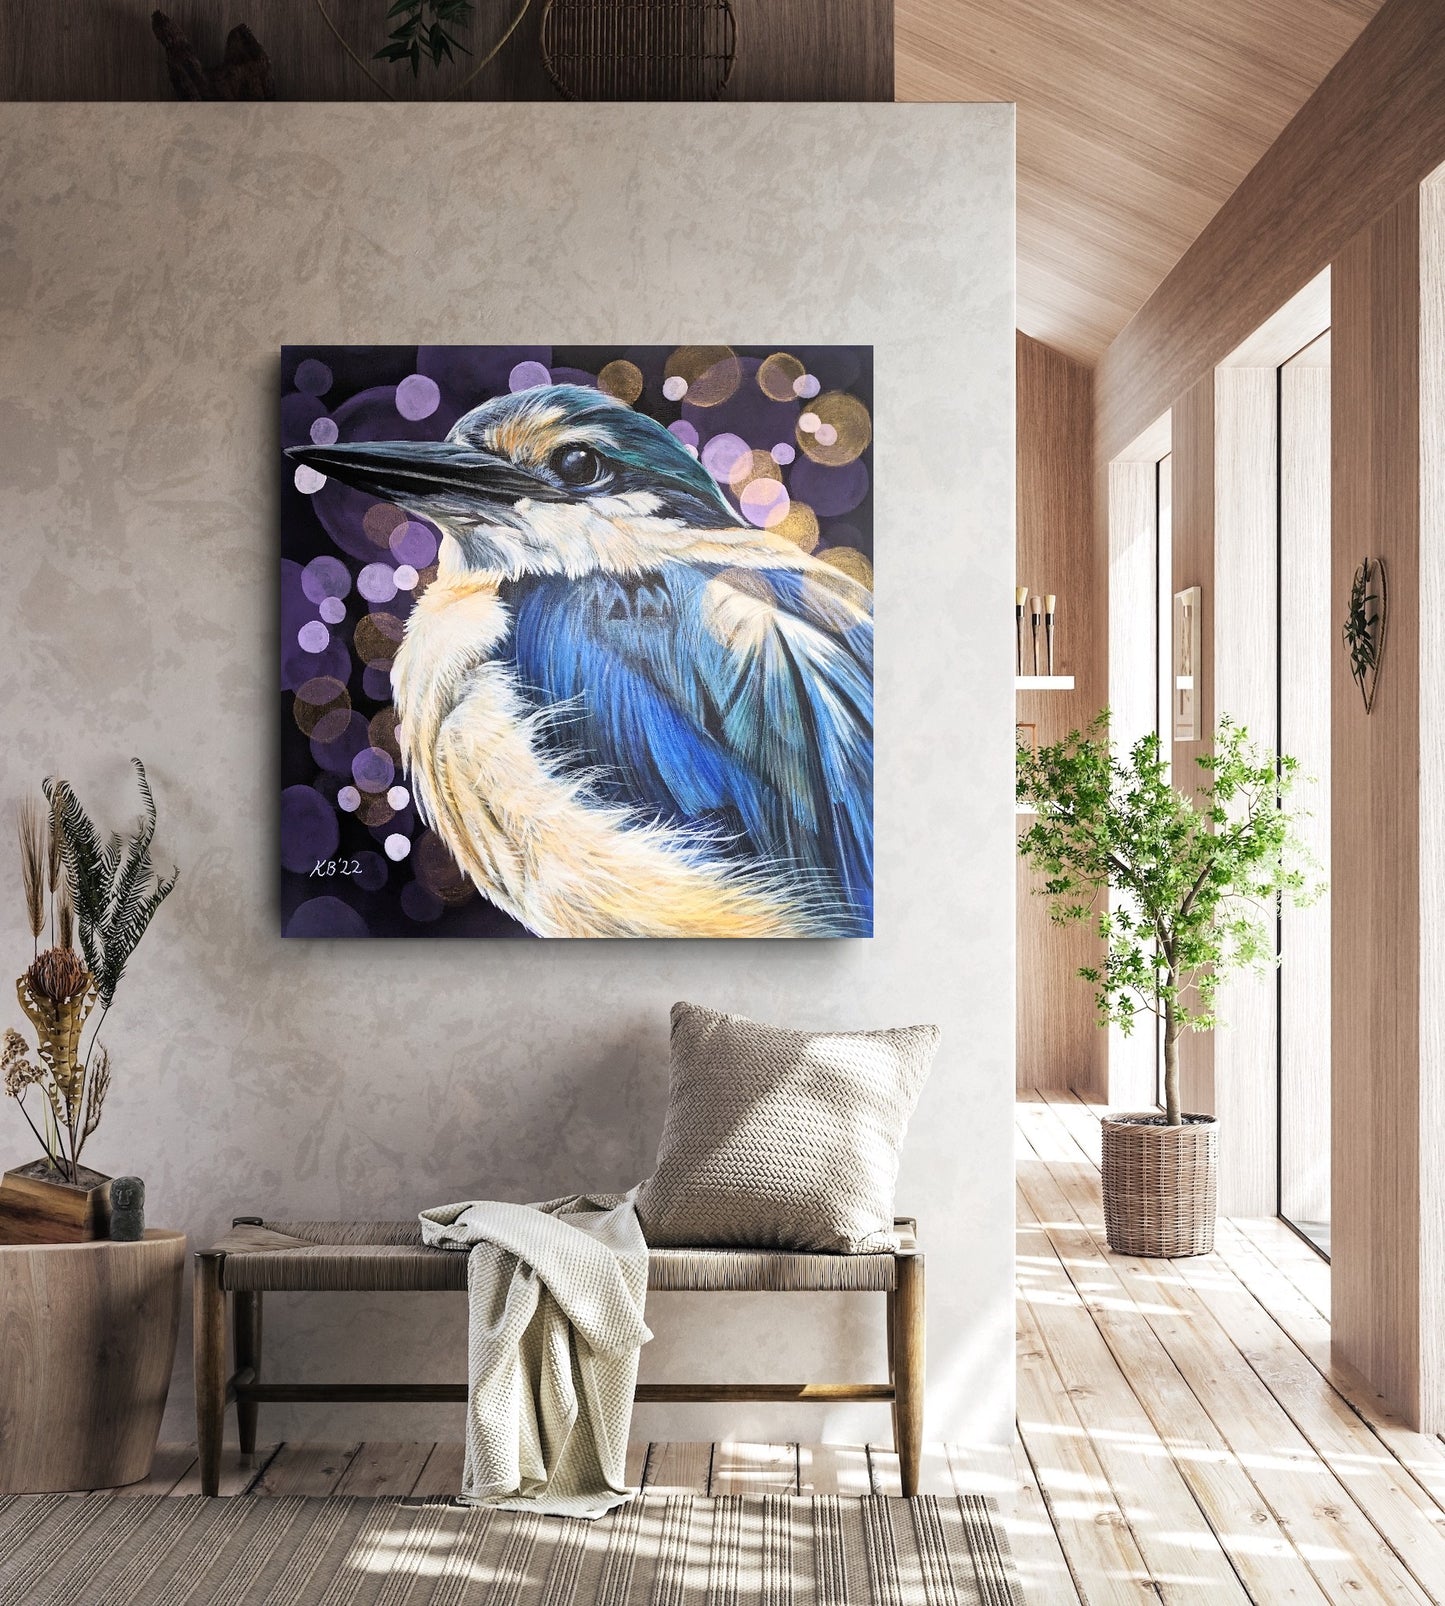 The Fisherman - Sacred Kingfisher